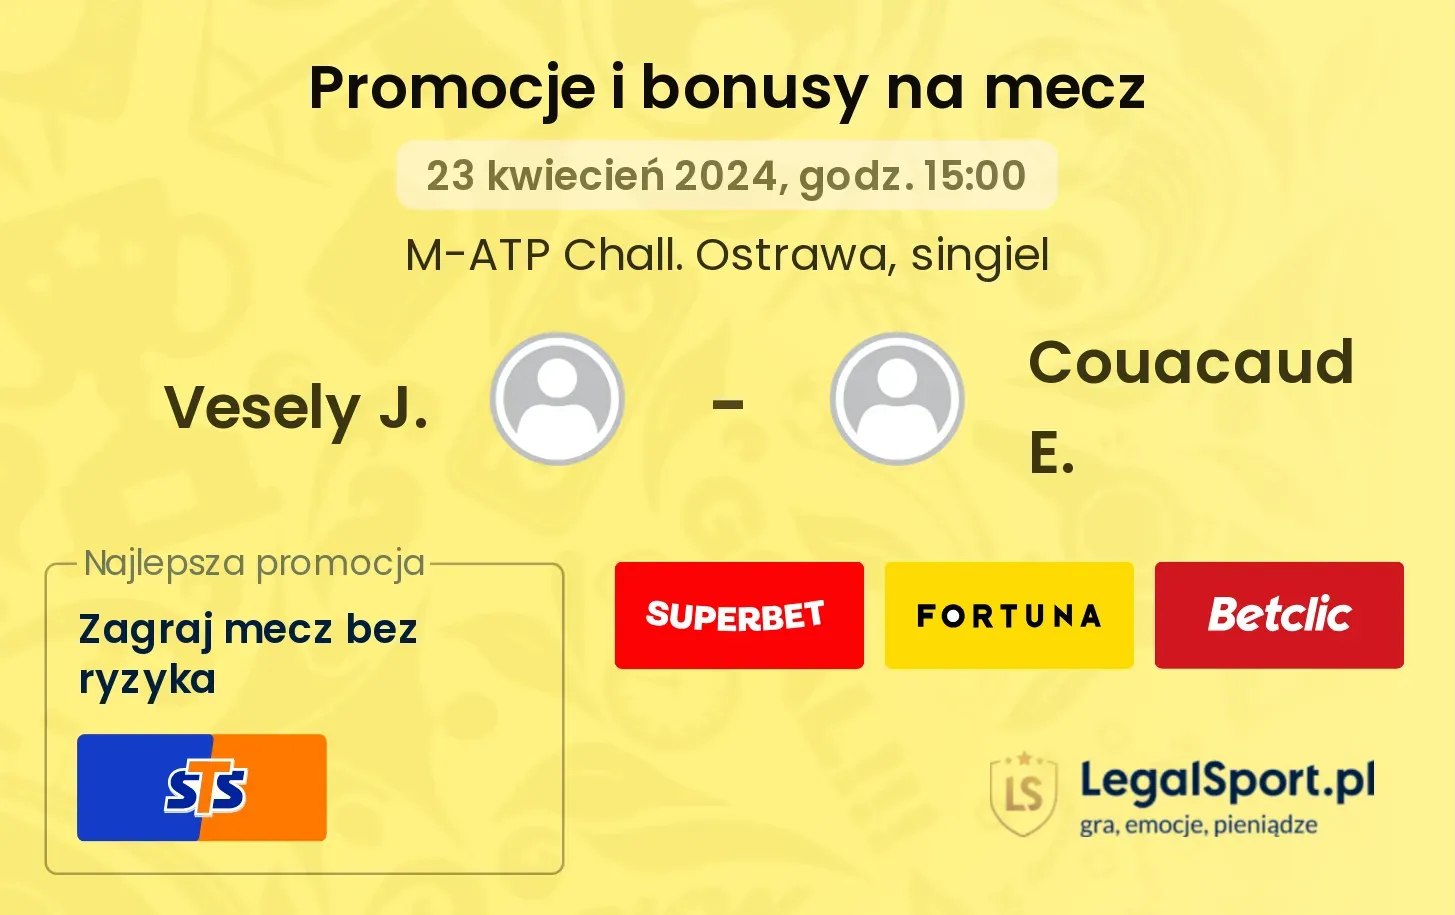 Vesely J. - Couacaud E. promocje bonusy na mecz